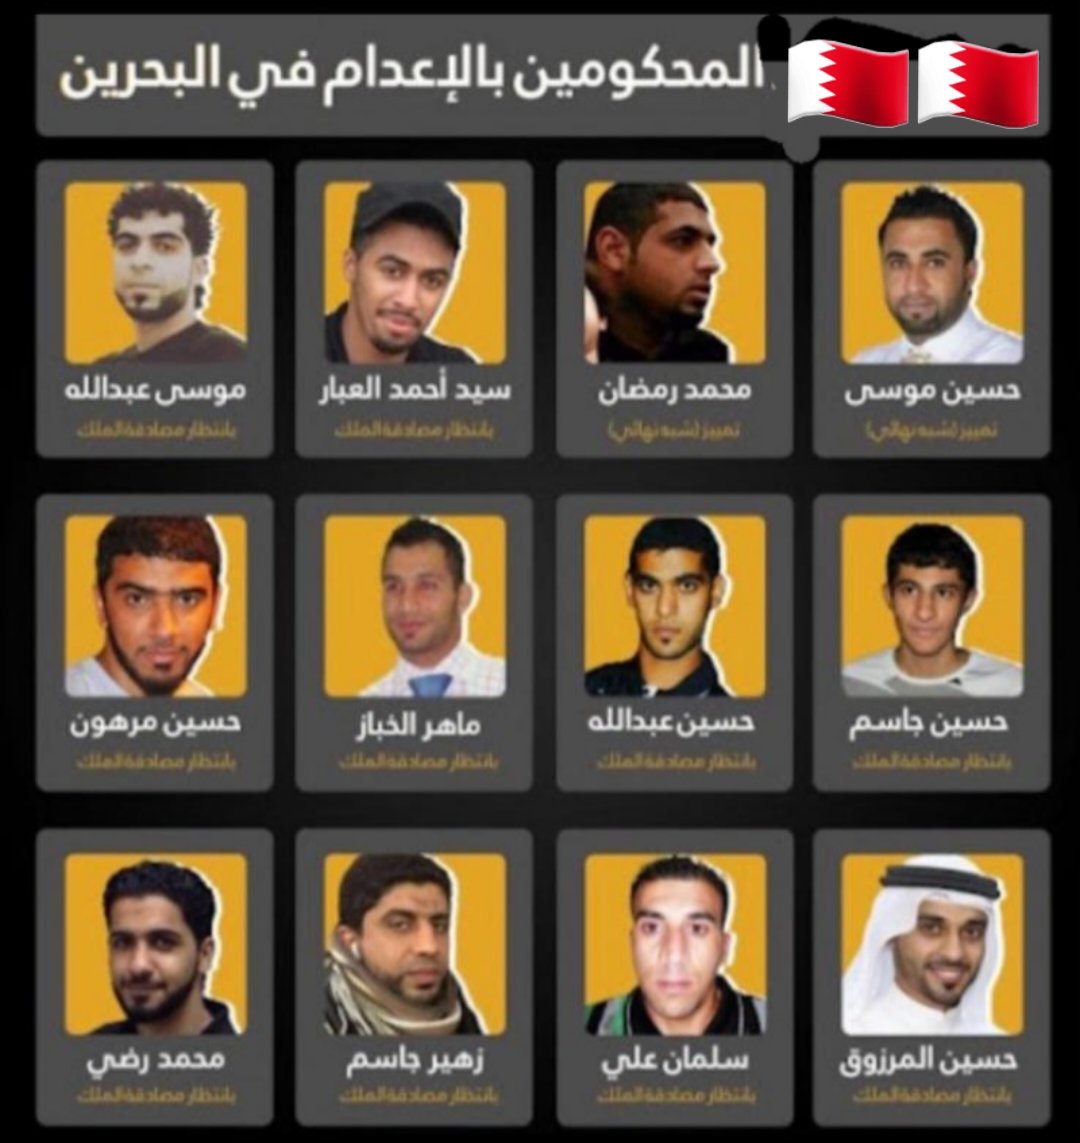 #لا_سجناء_رأي_في_البحرين 
#البحرين
هؤلاء قتلو رجال الأمن ٢٠١١